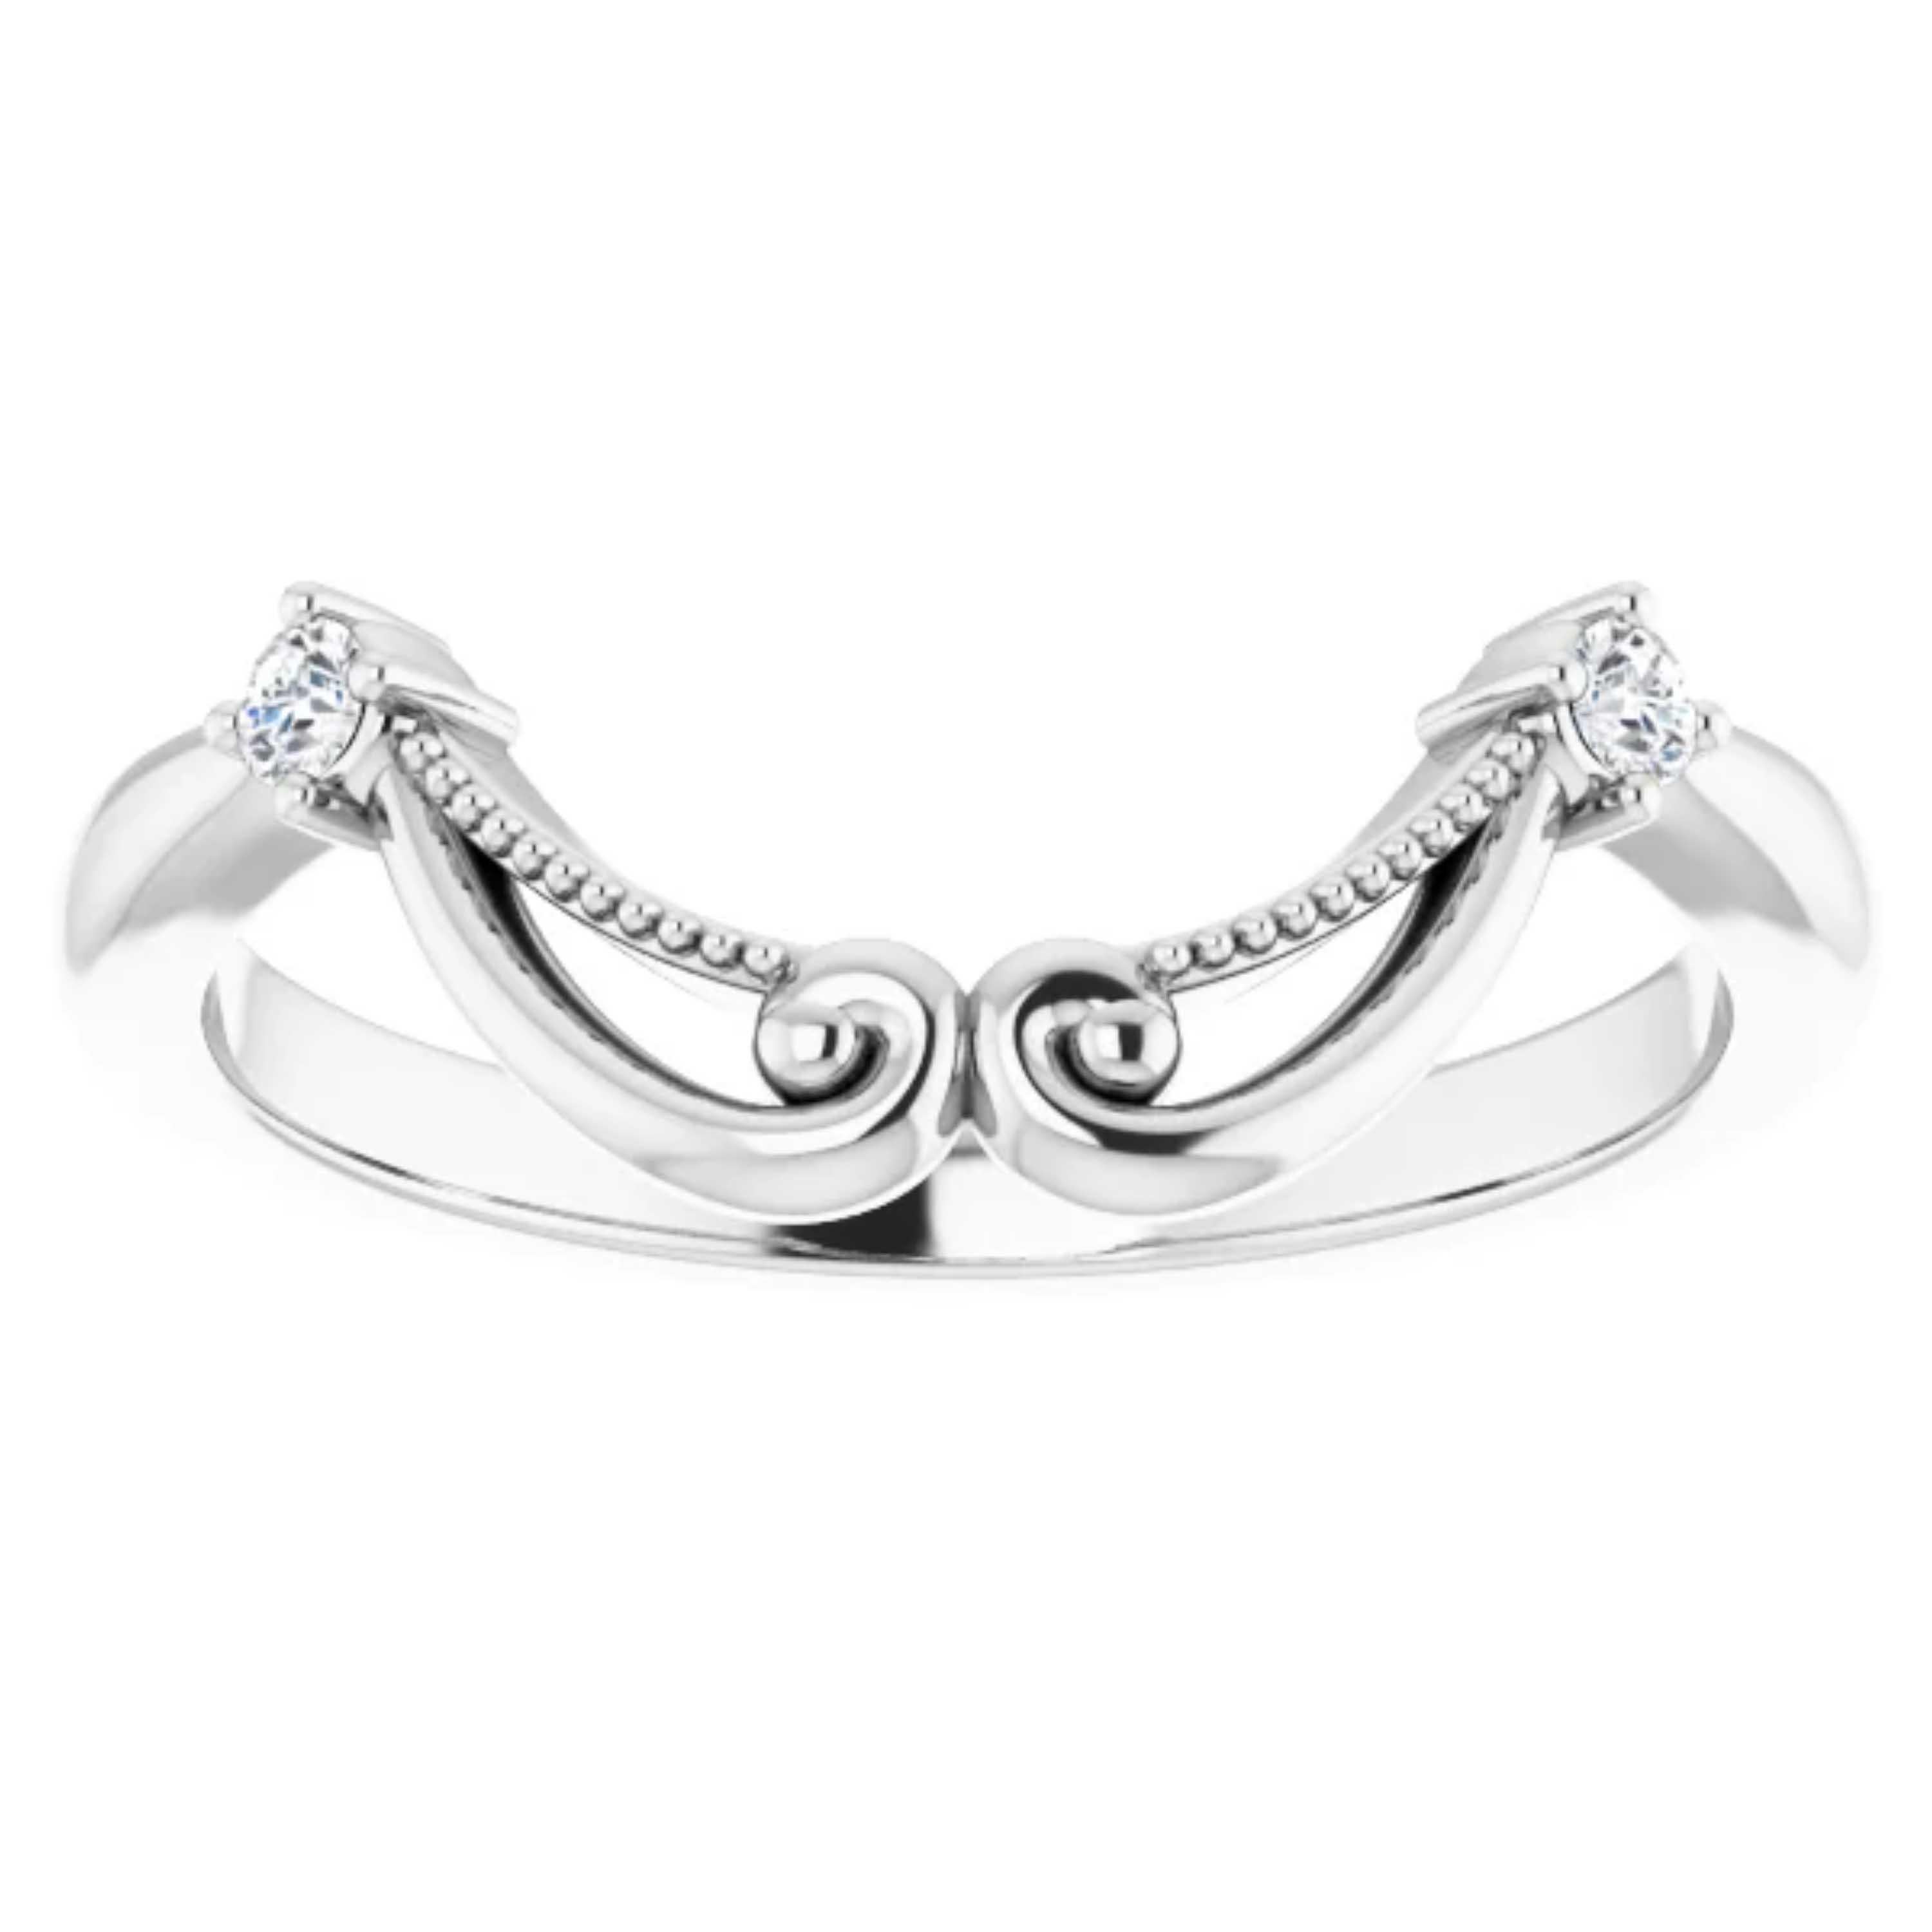 Women's Vintage Style Halo GIA Diamond Round Engagement Wedding Ring Set 18k White Gold For Sale